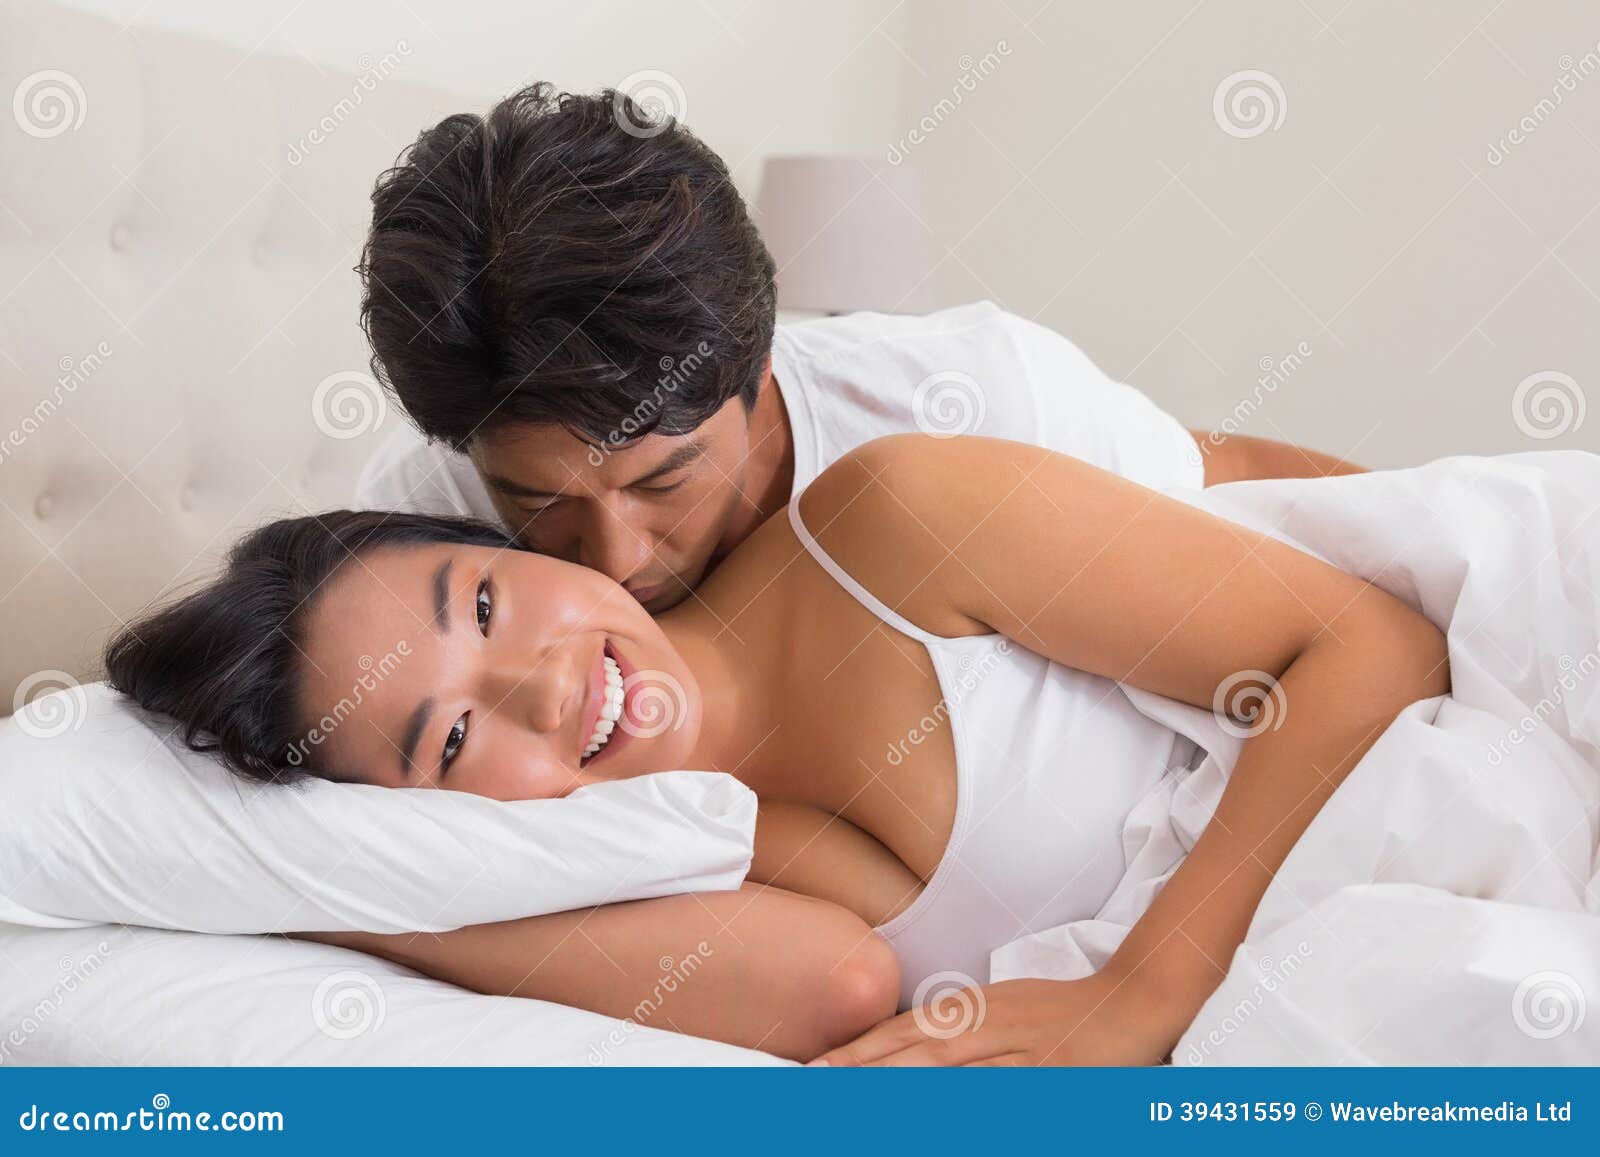 Мужчинам нравится стоны. Мужчины целуют женщин в купальниках в постели. Girl Kisses man in the Cheek.